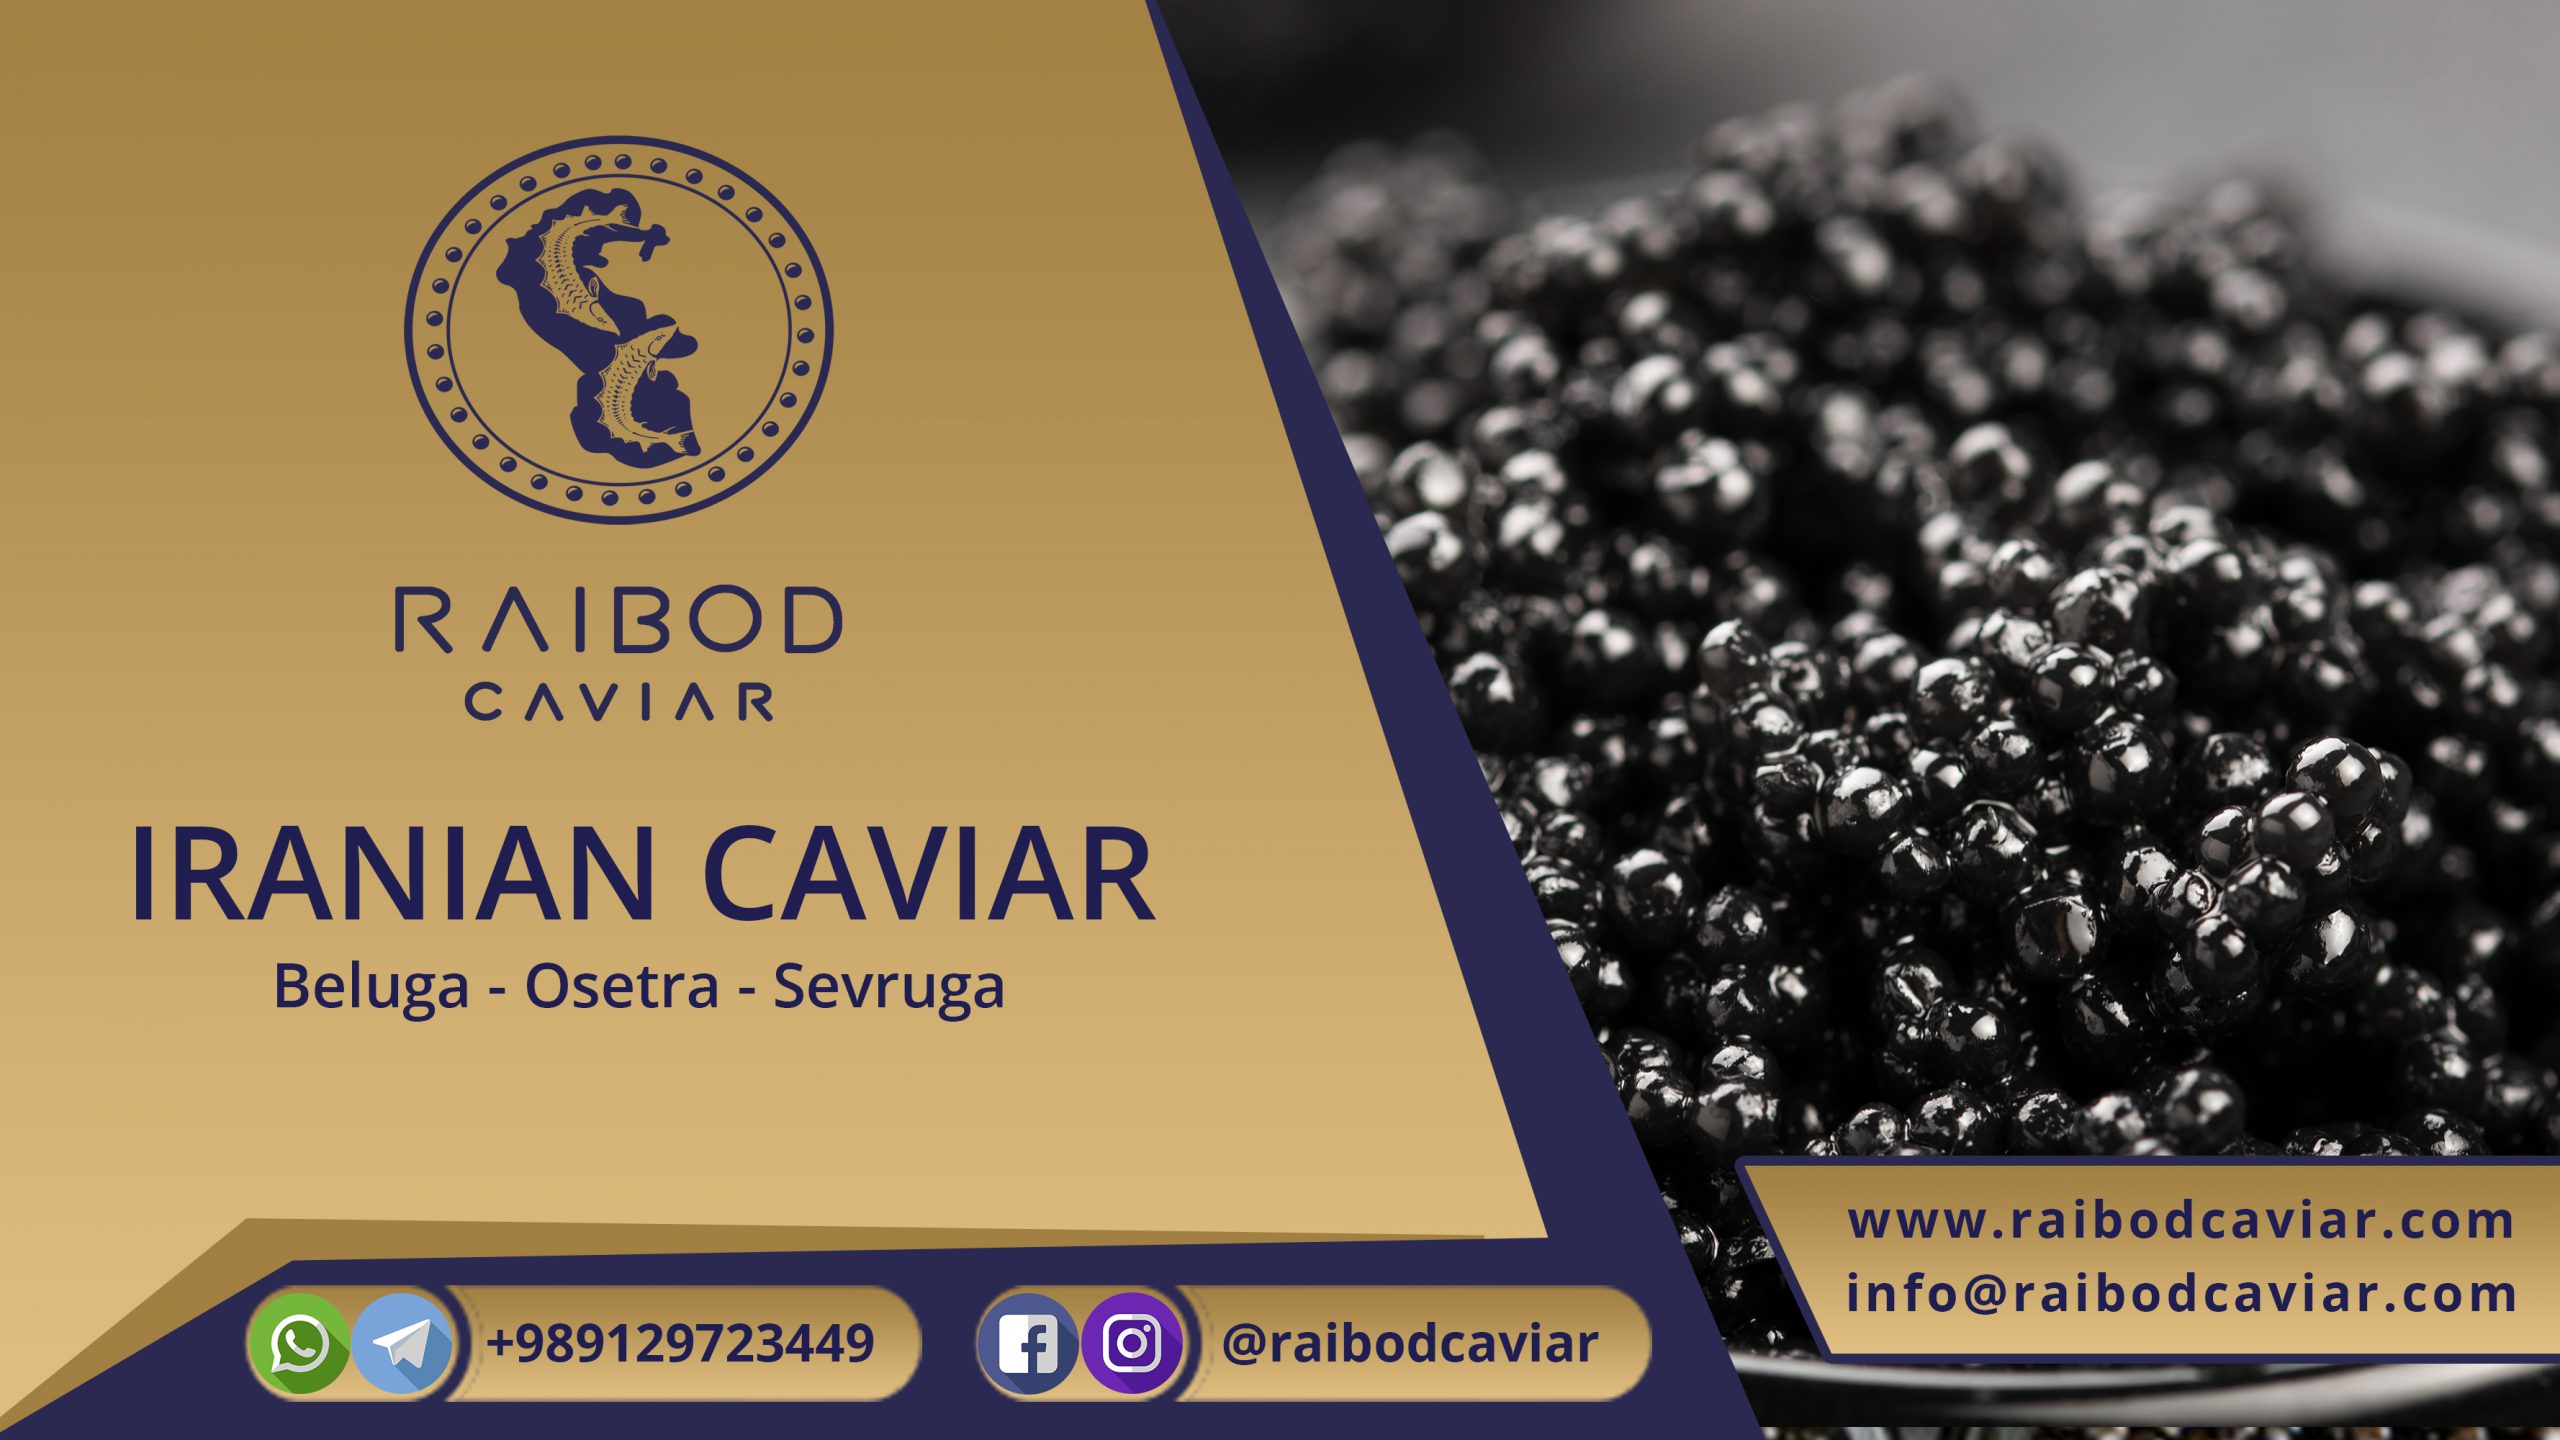 Caviar distribution center